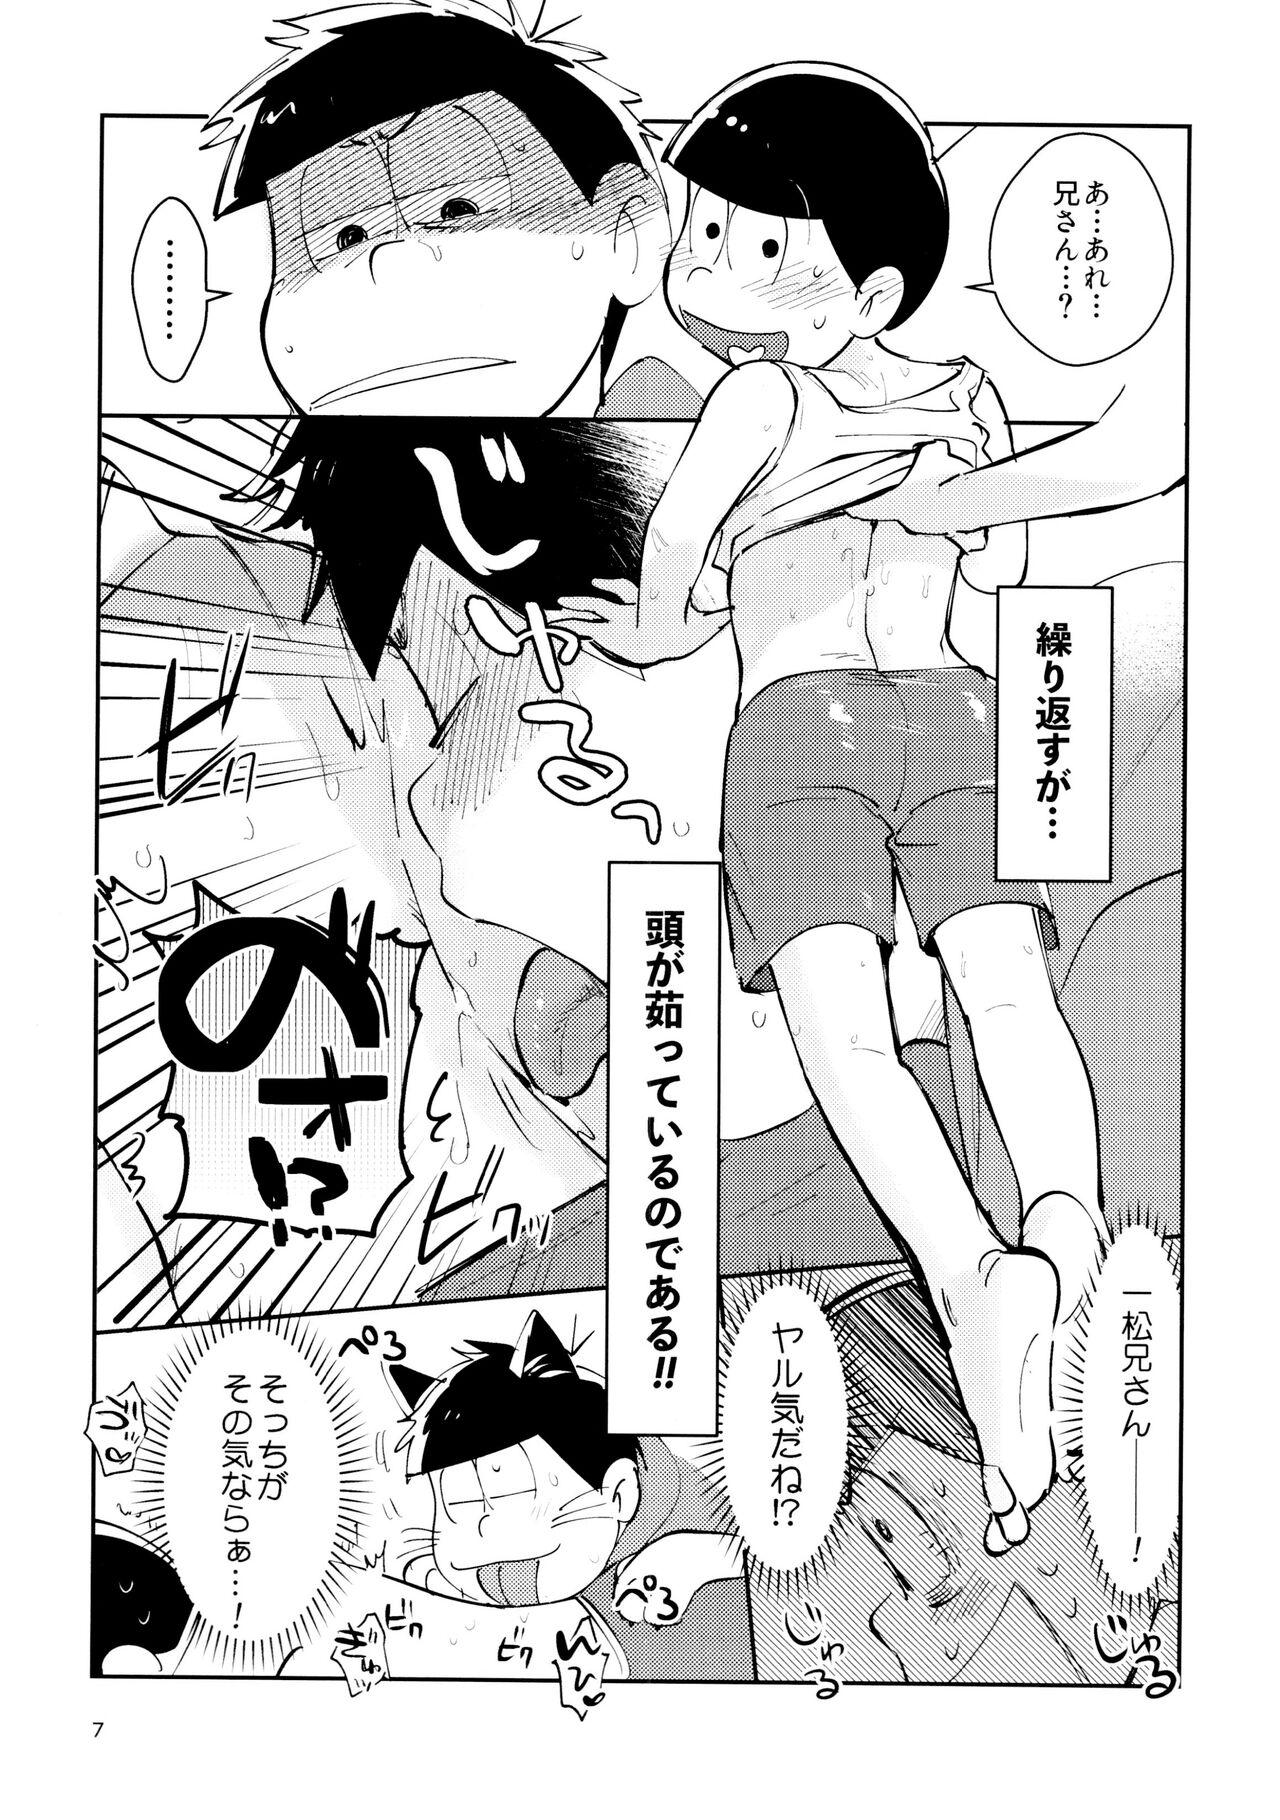 Ex Girlfriend Zatsu Shinkiro's - Osomatsu san Twistys - Page 7